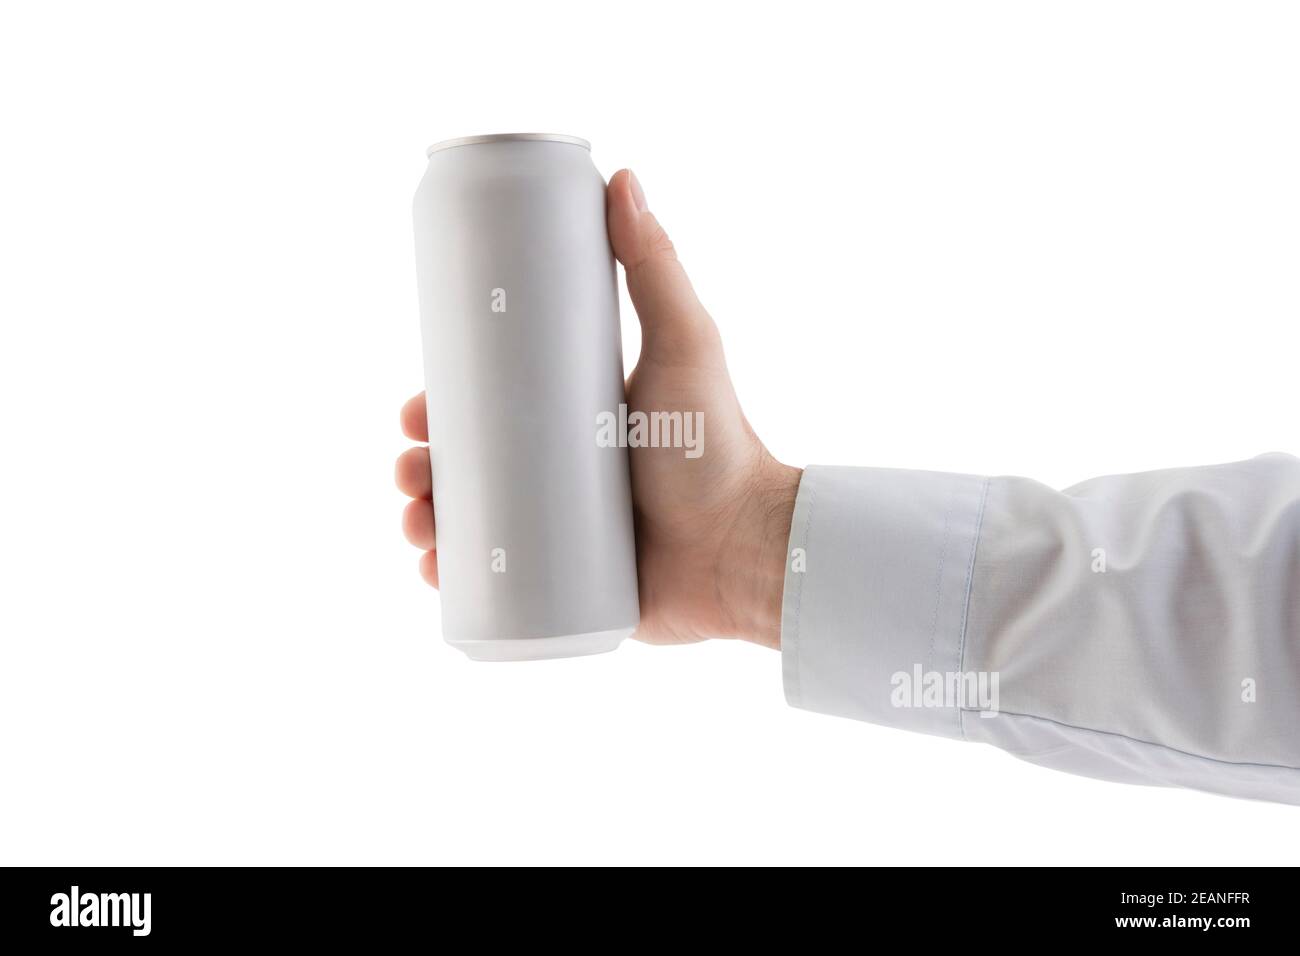 Uomo che tiene una lattina bianca in alluminio grezzo con una bevanda isolata sfondo bianco con tracciato di ritaglio Foto Stock